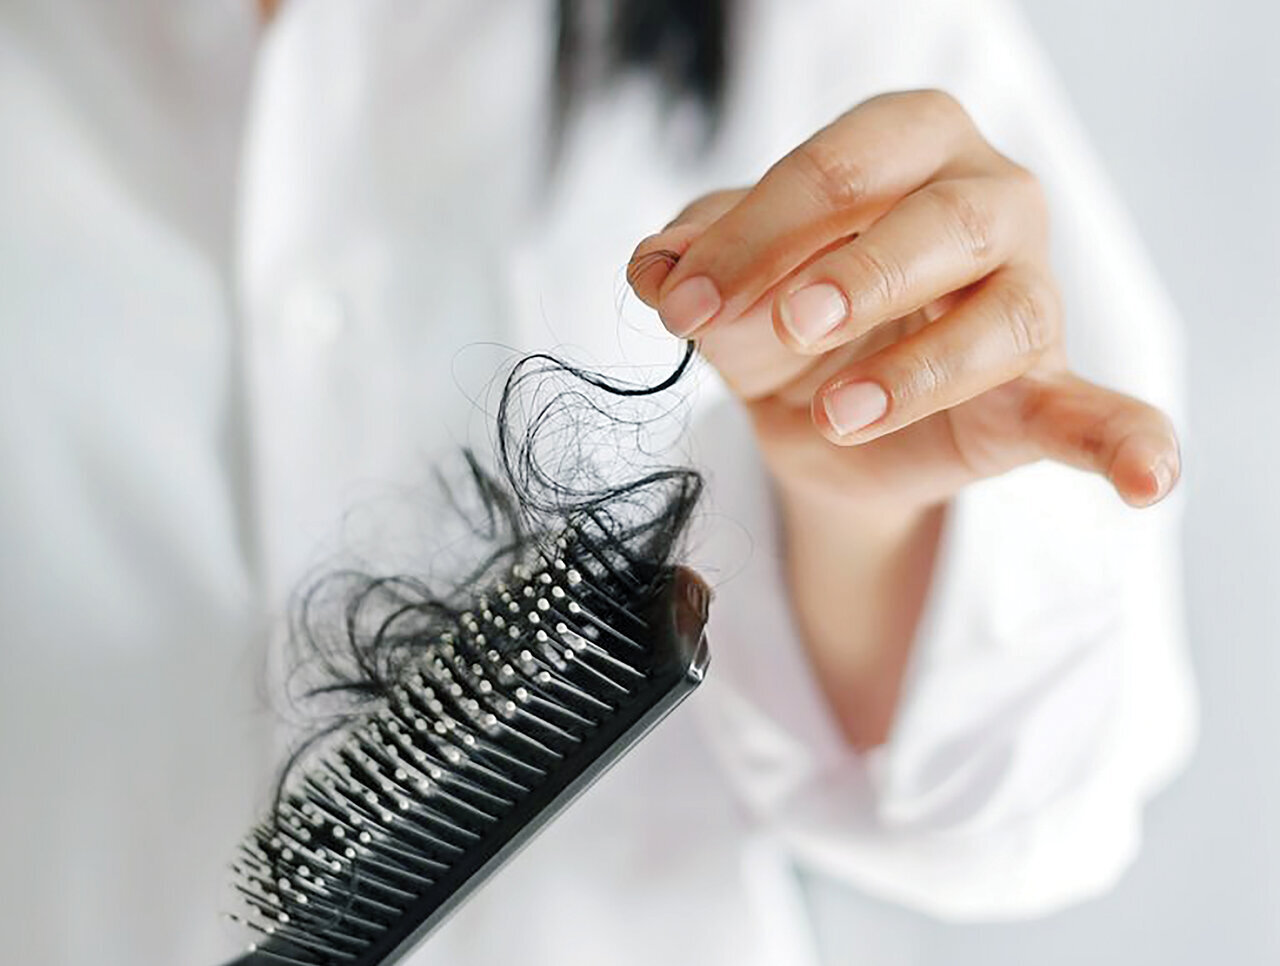 ریزش مو چه زمانی غیرطبیعی است؟/ شایع ترین علل ریزش مو چیست؟